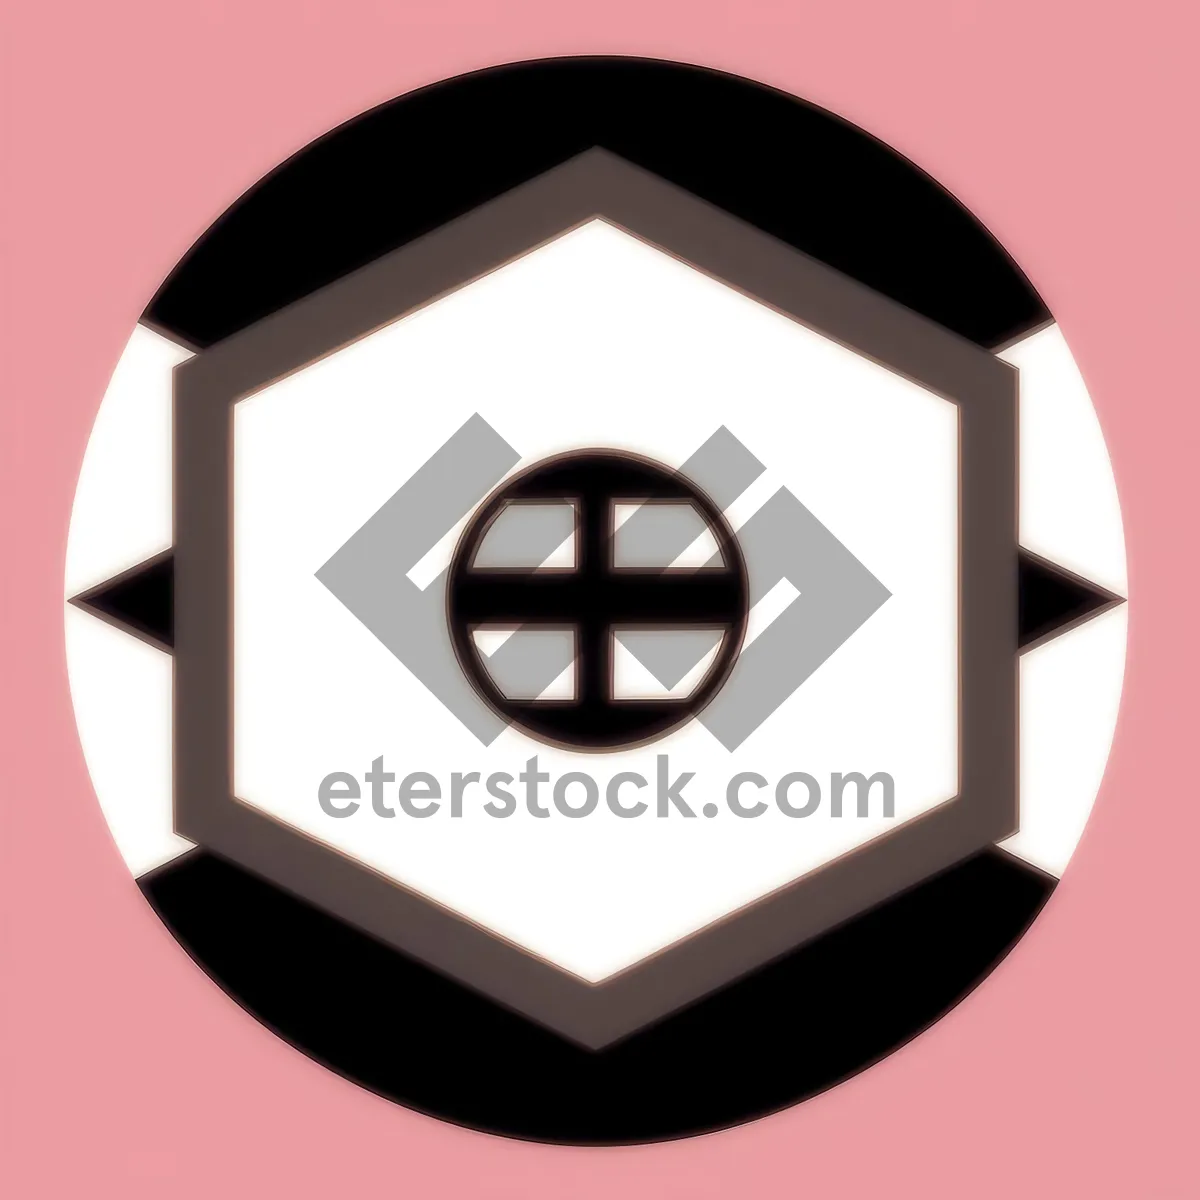 Picture of Glossy black button icon set - web symbols